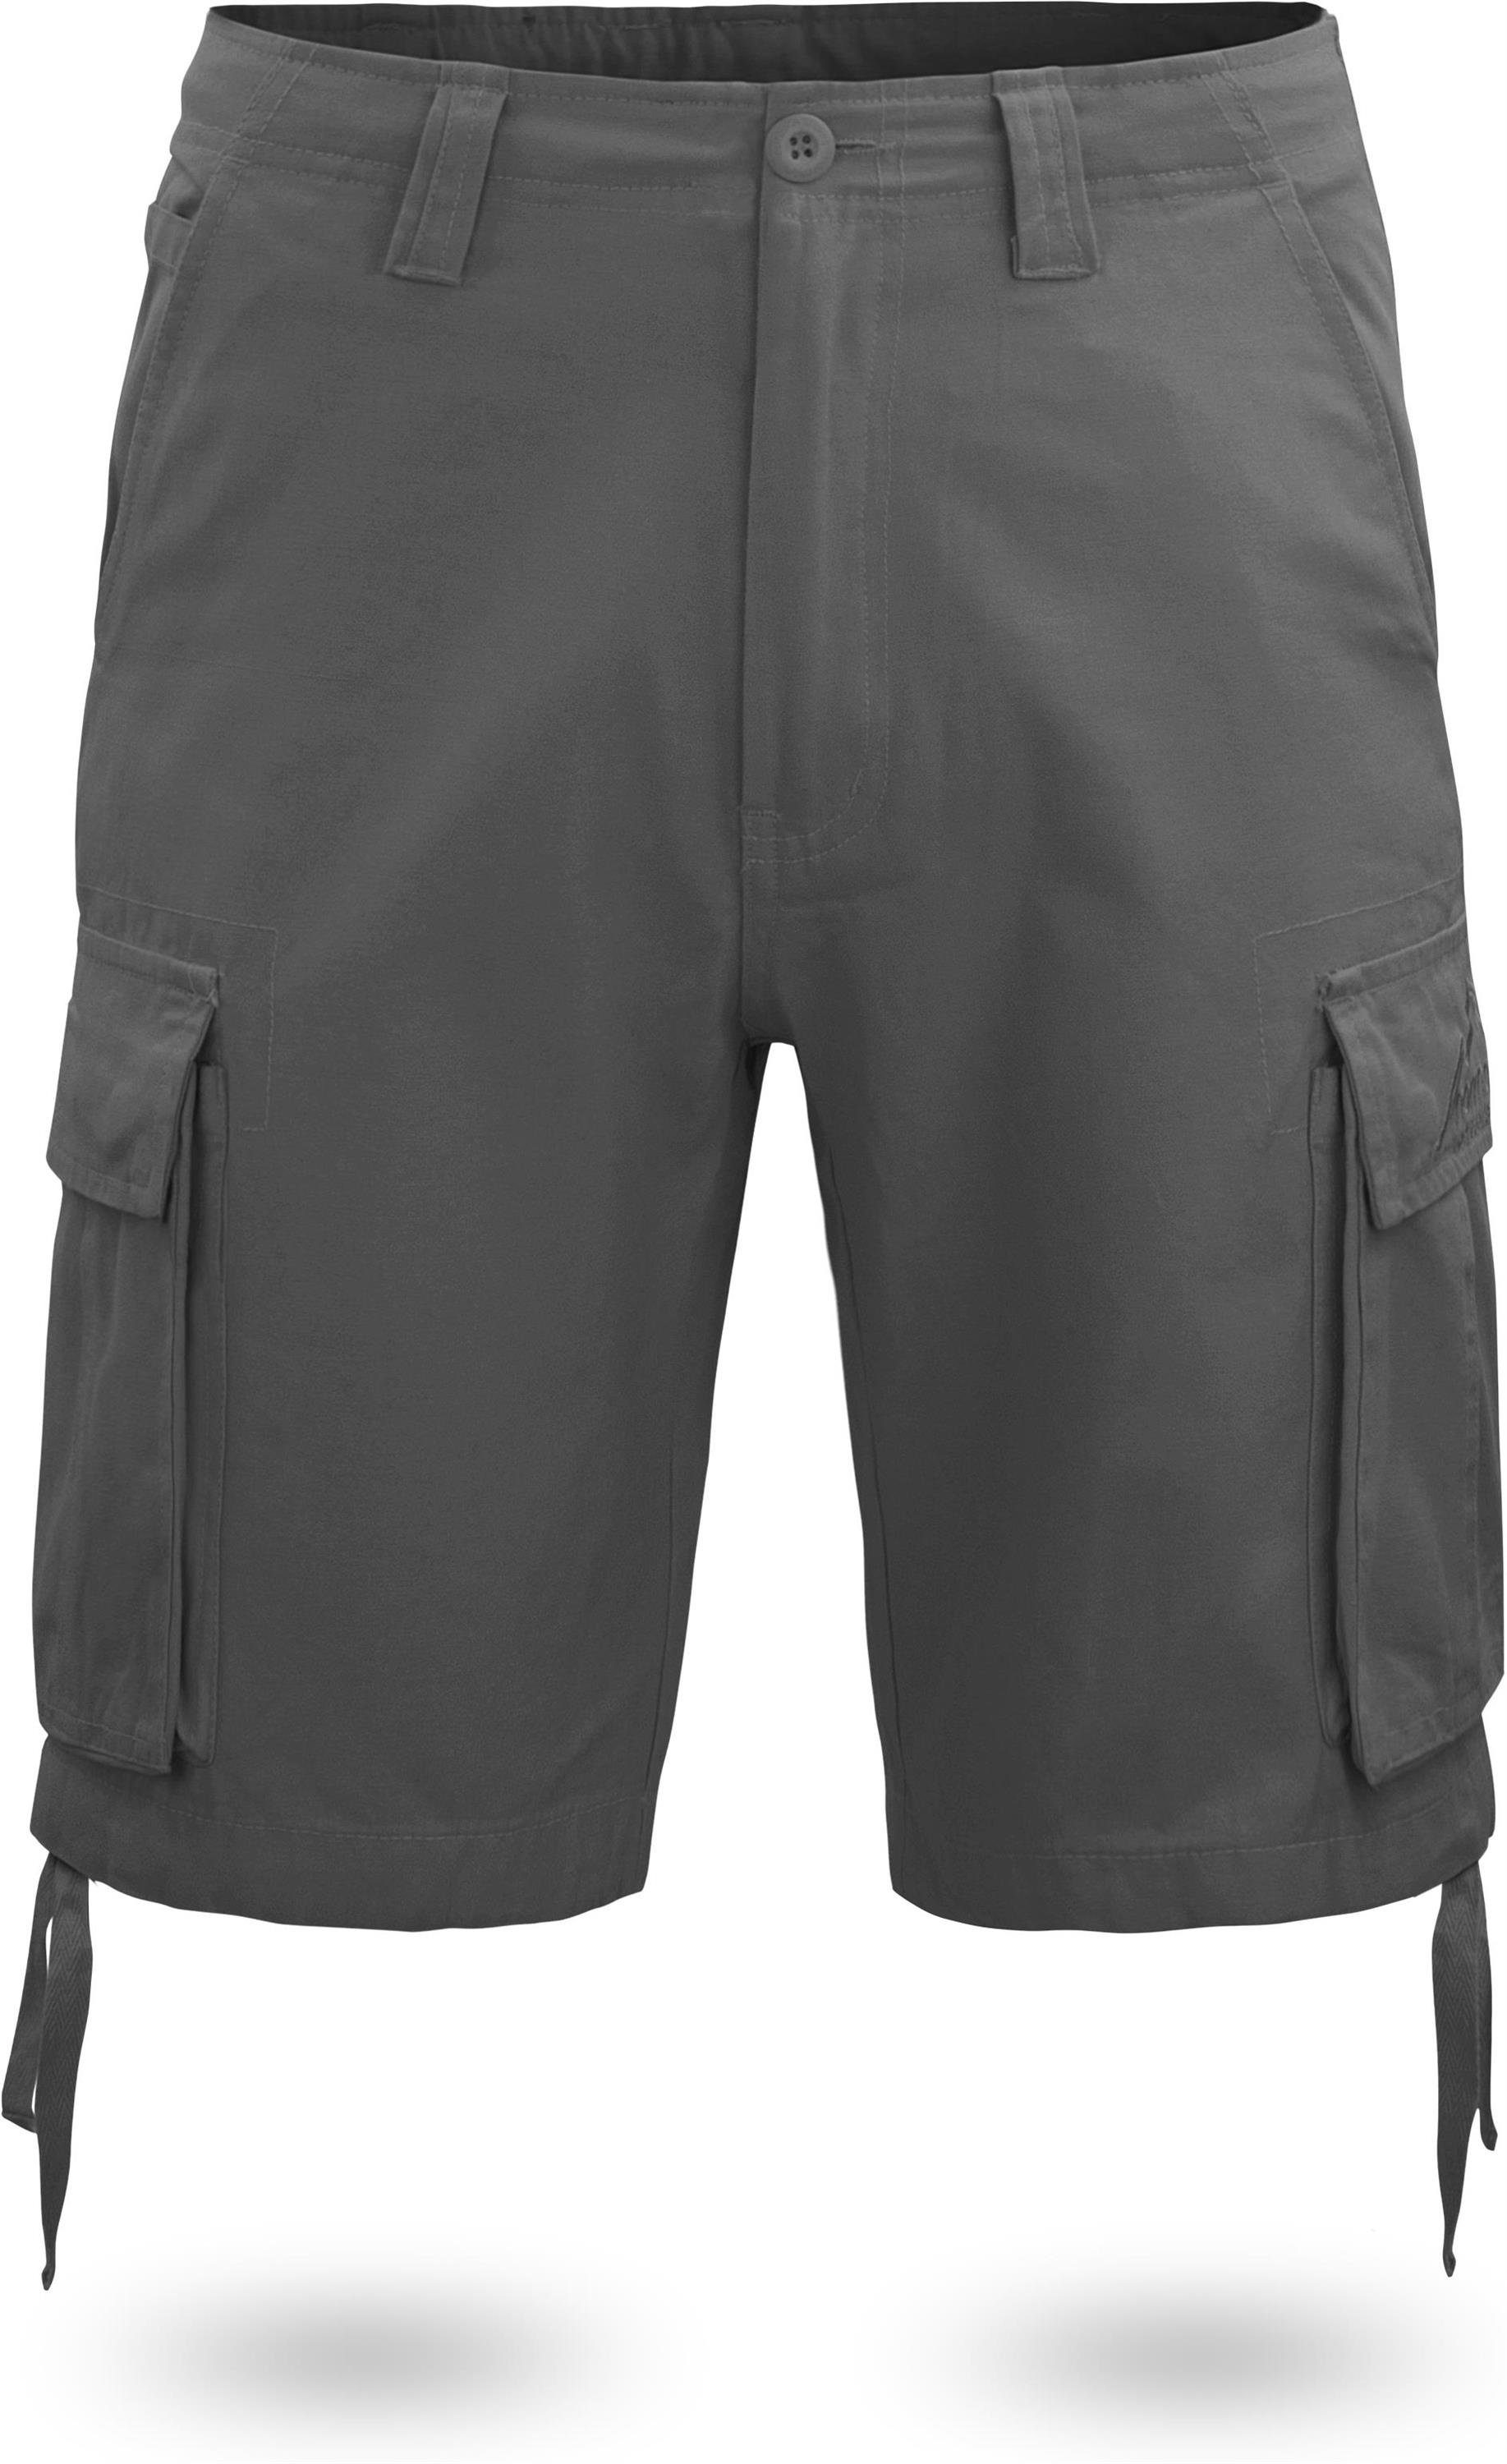 normani Bermudas Herren Shorts Kalahari Sommershorts mit Shorts Anthrazit Vintage aus kurze Cargotaschen 100% Bio-Baumwolle